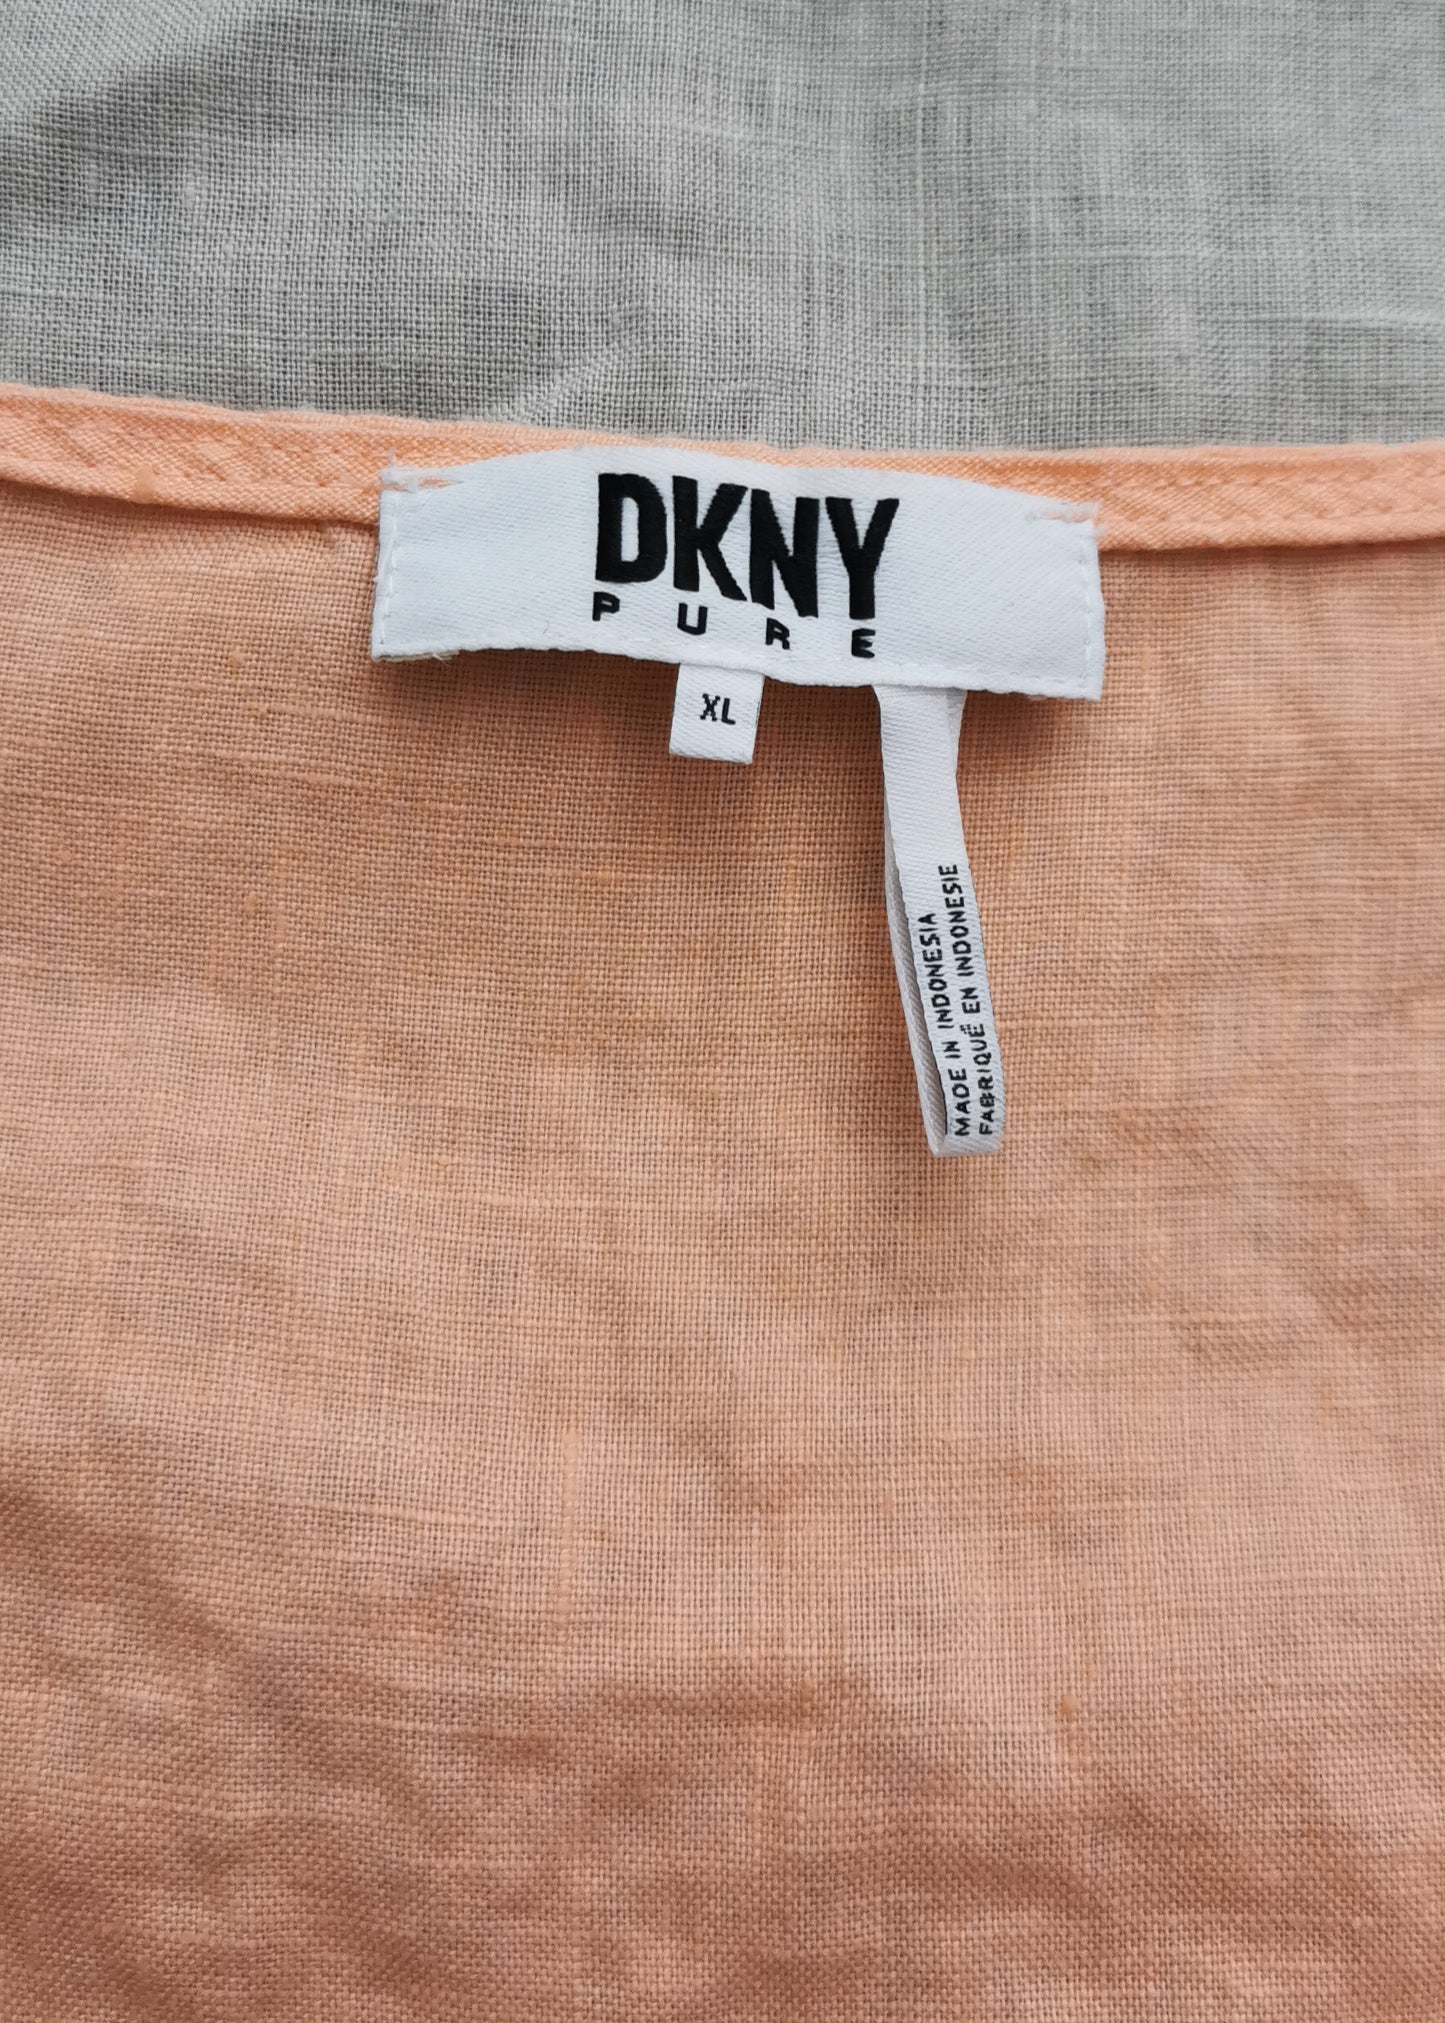 DKNY Linen Top (XL)